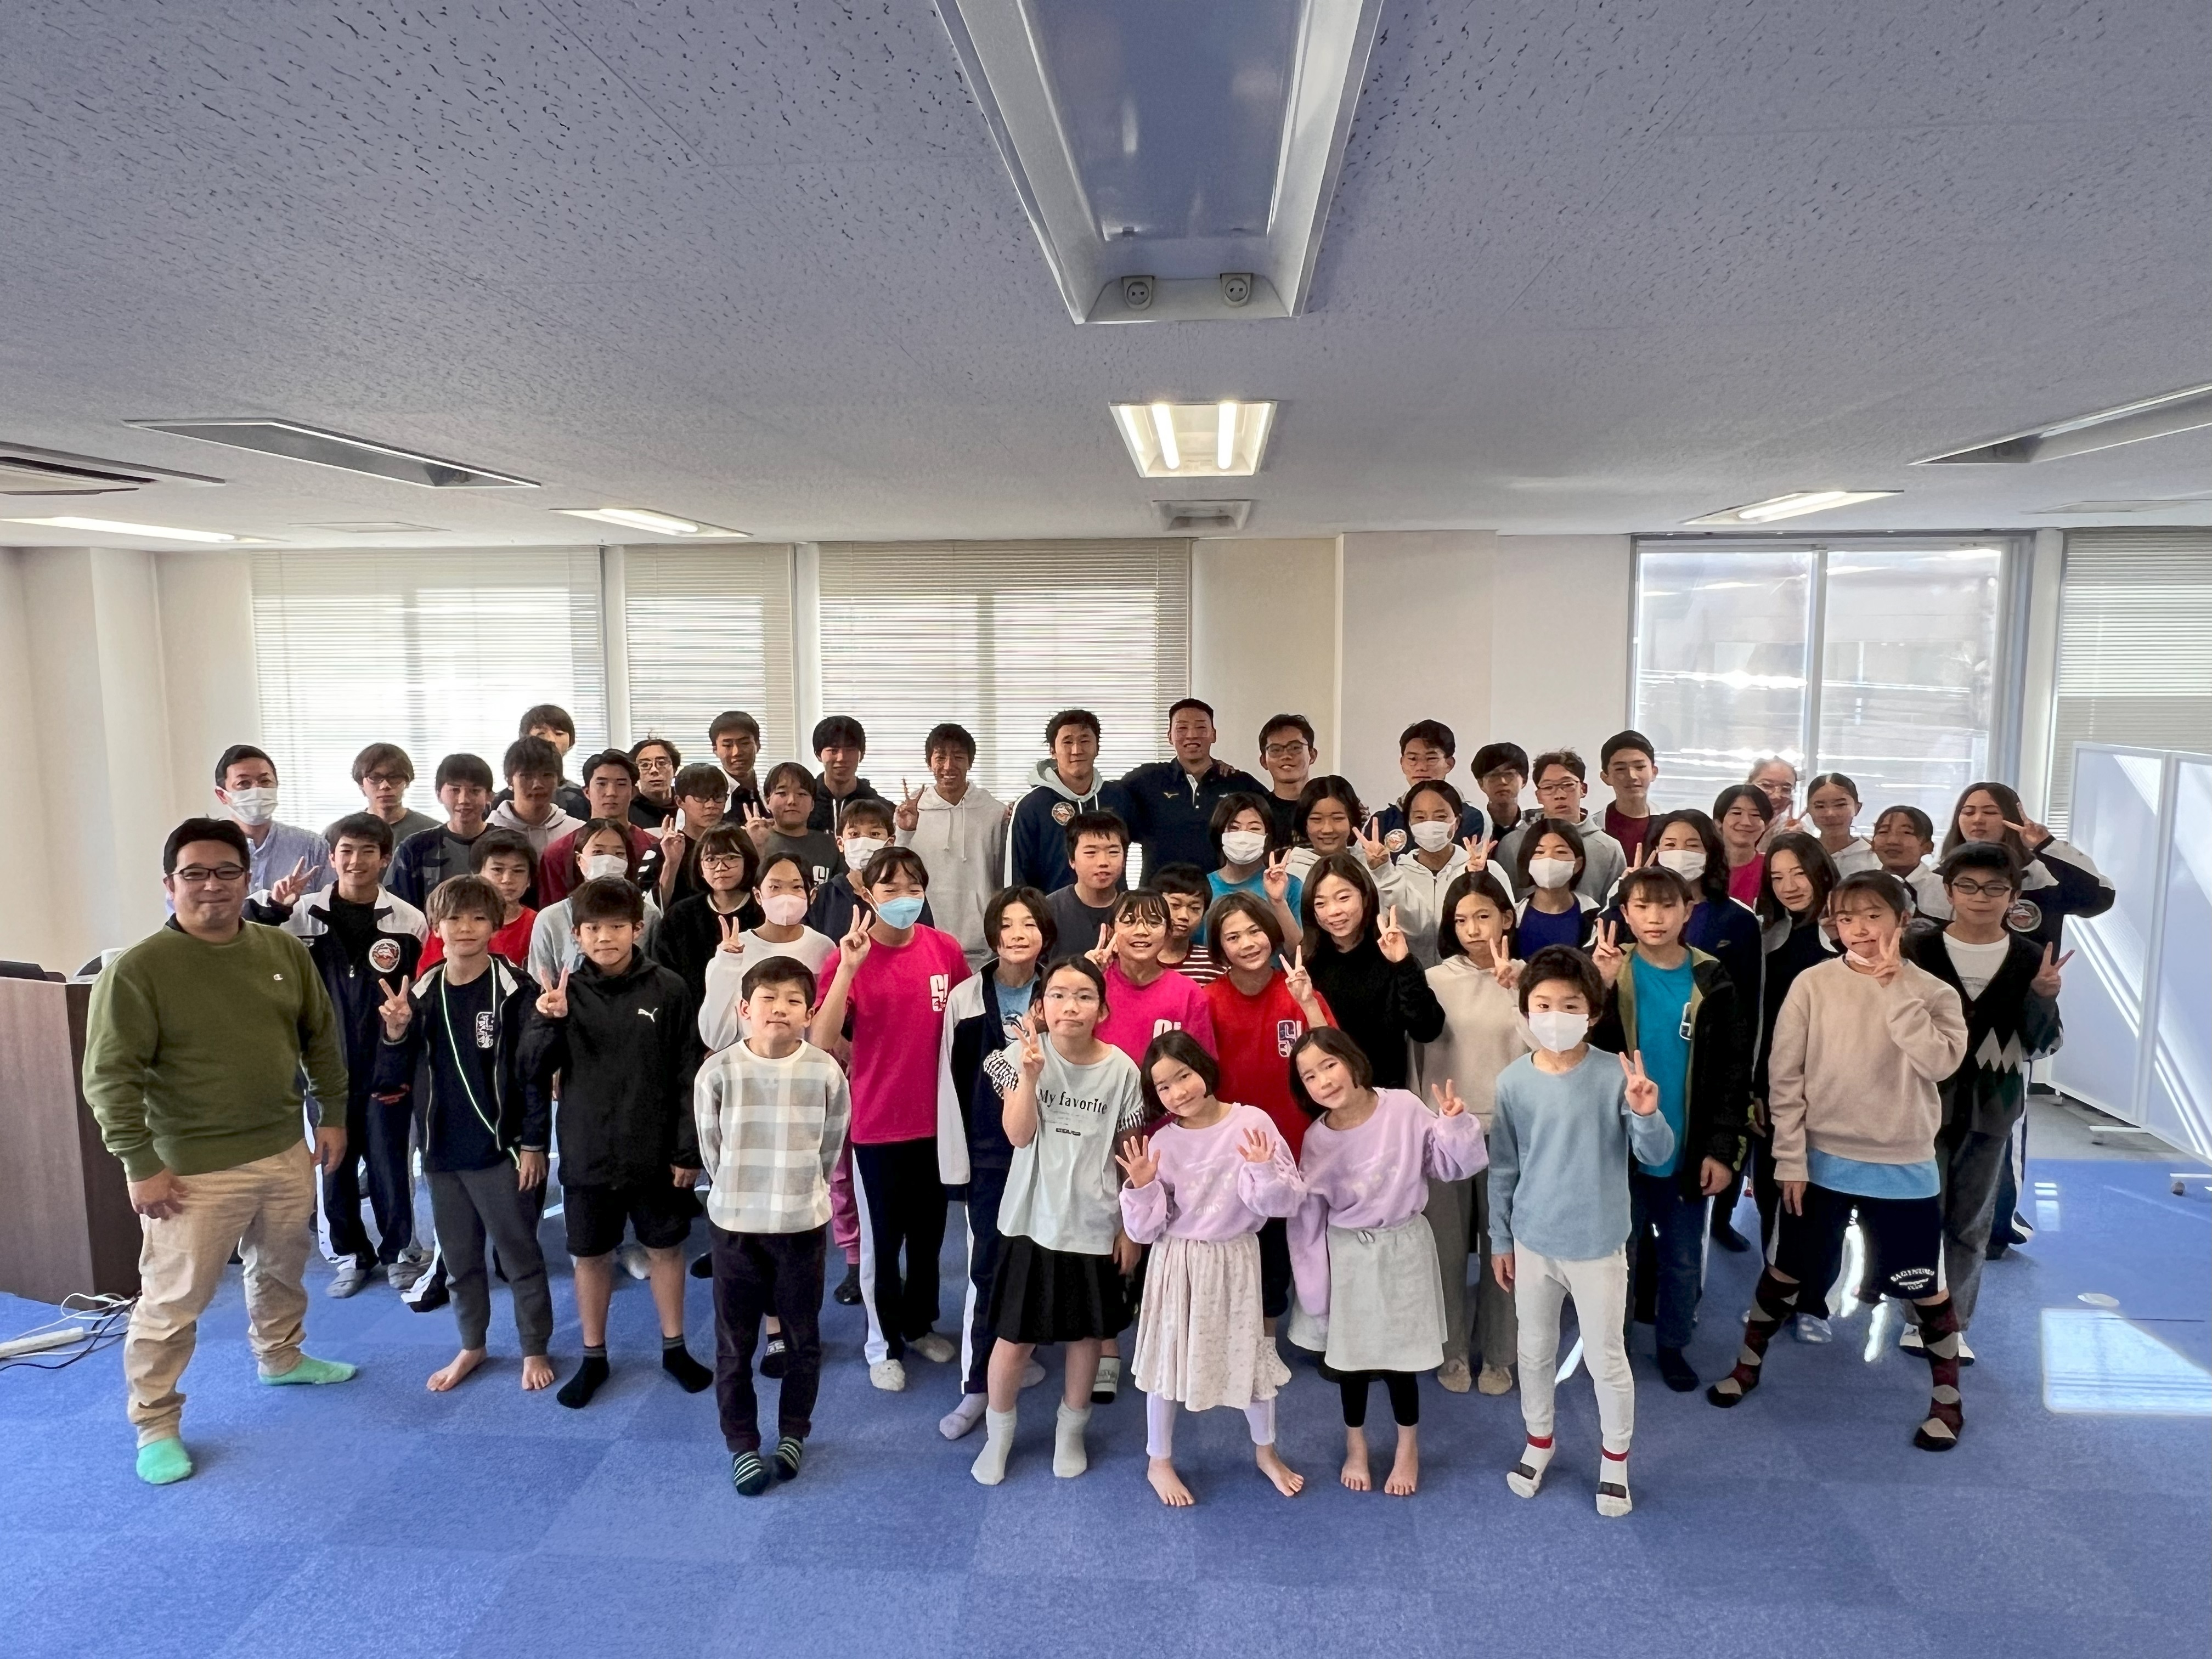 ＜開催報告＞サギヌマスイミングクラブが
競泳日本代表 川根 正大選手の特別講演会を開催 – Net24